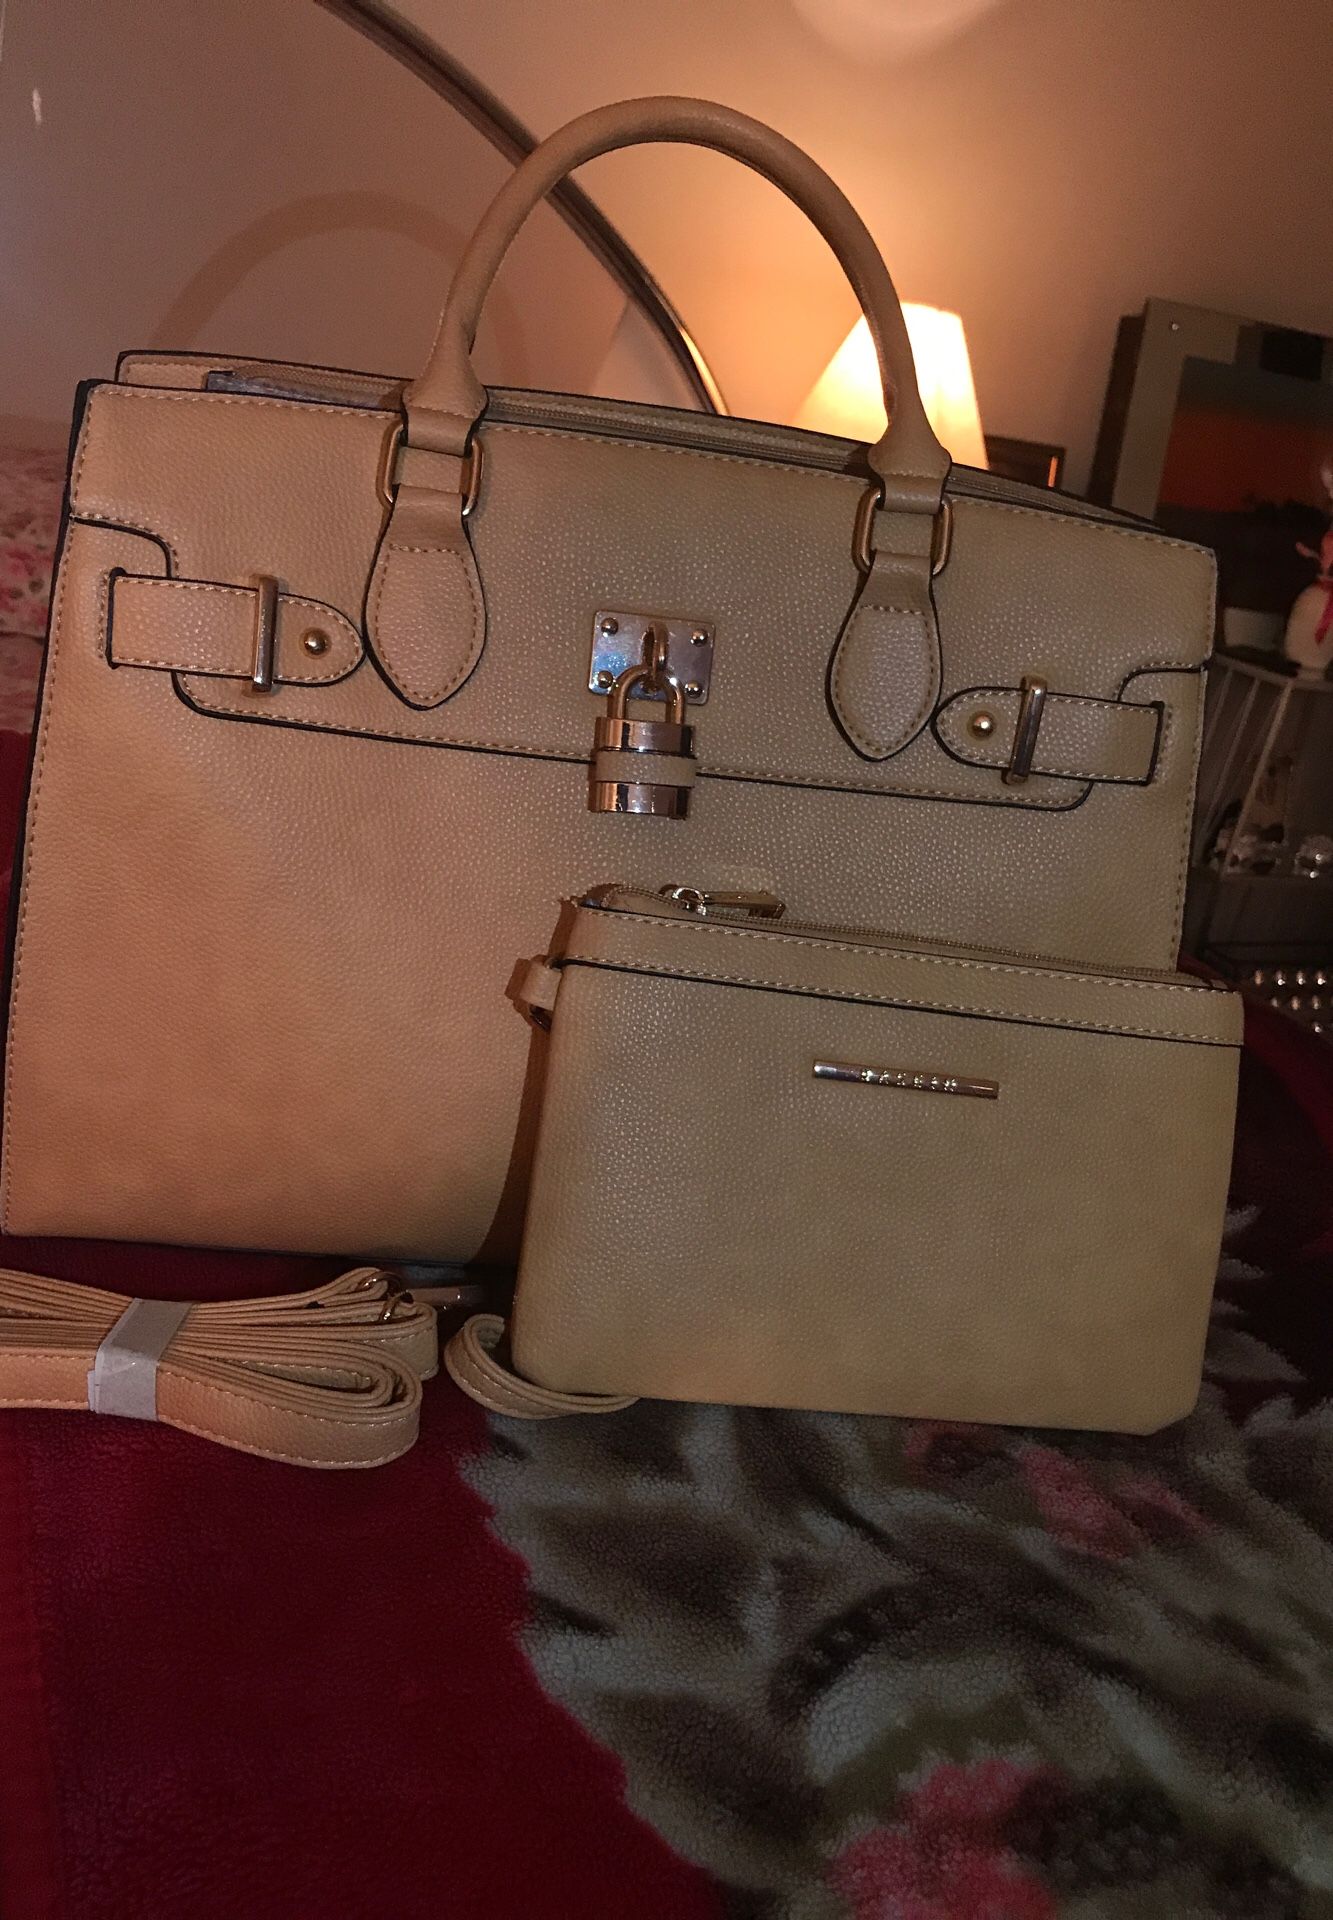 Dasein Handbag with purse and wallet